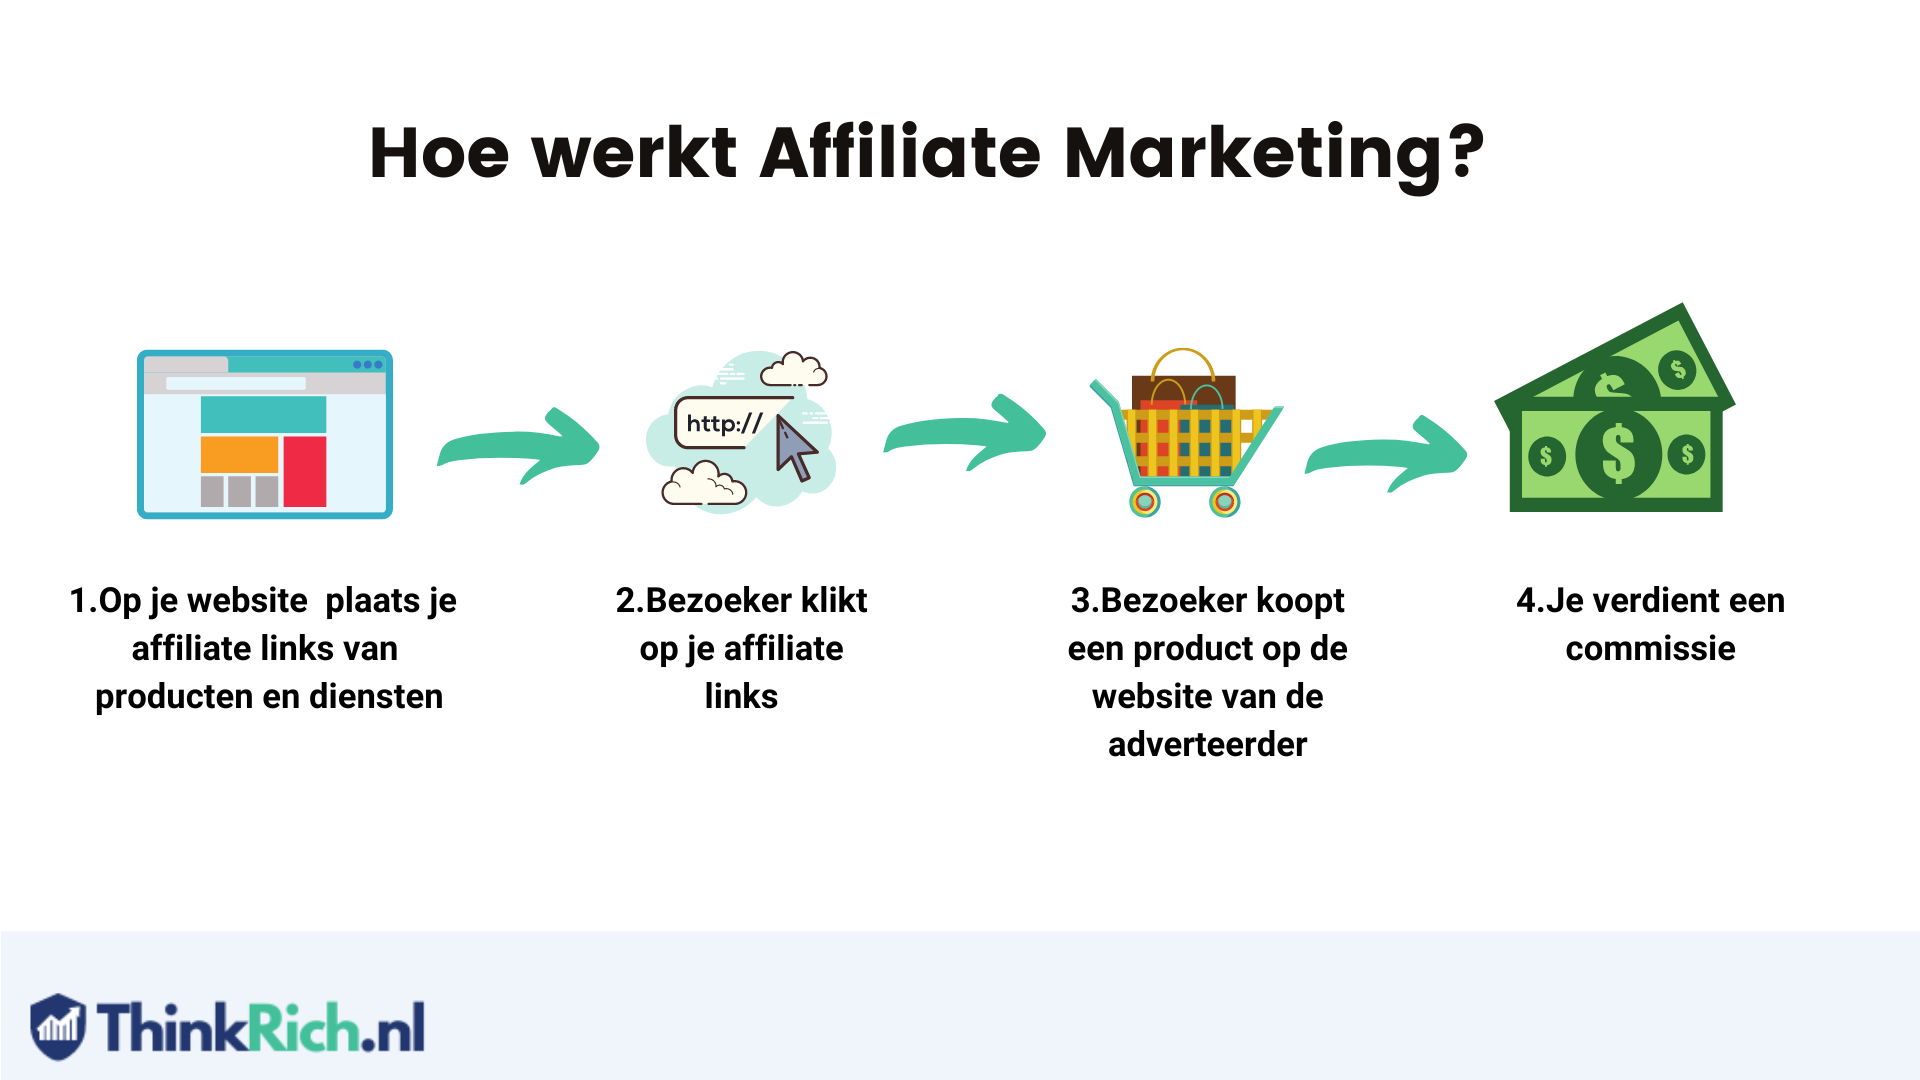 Hoe werkt affiliate marketing